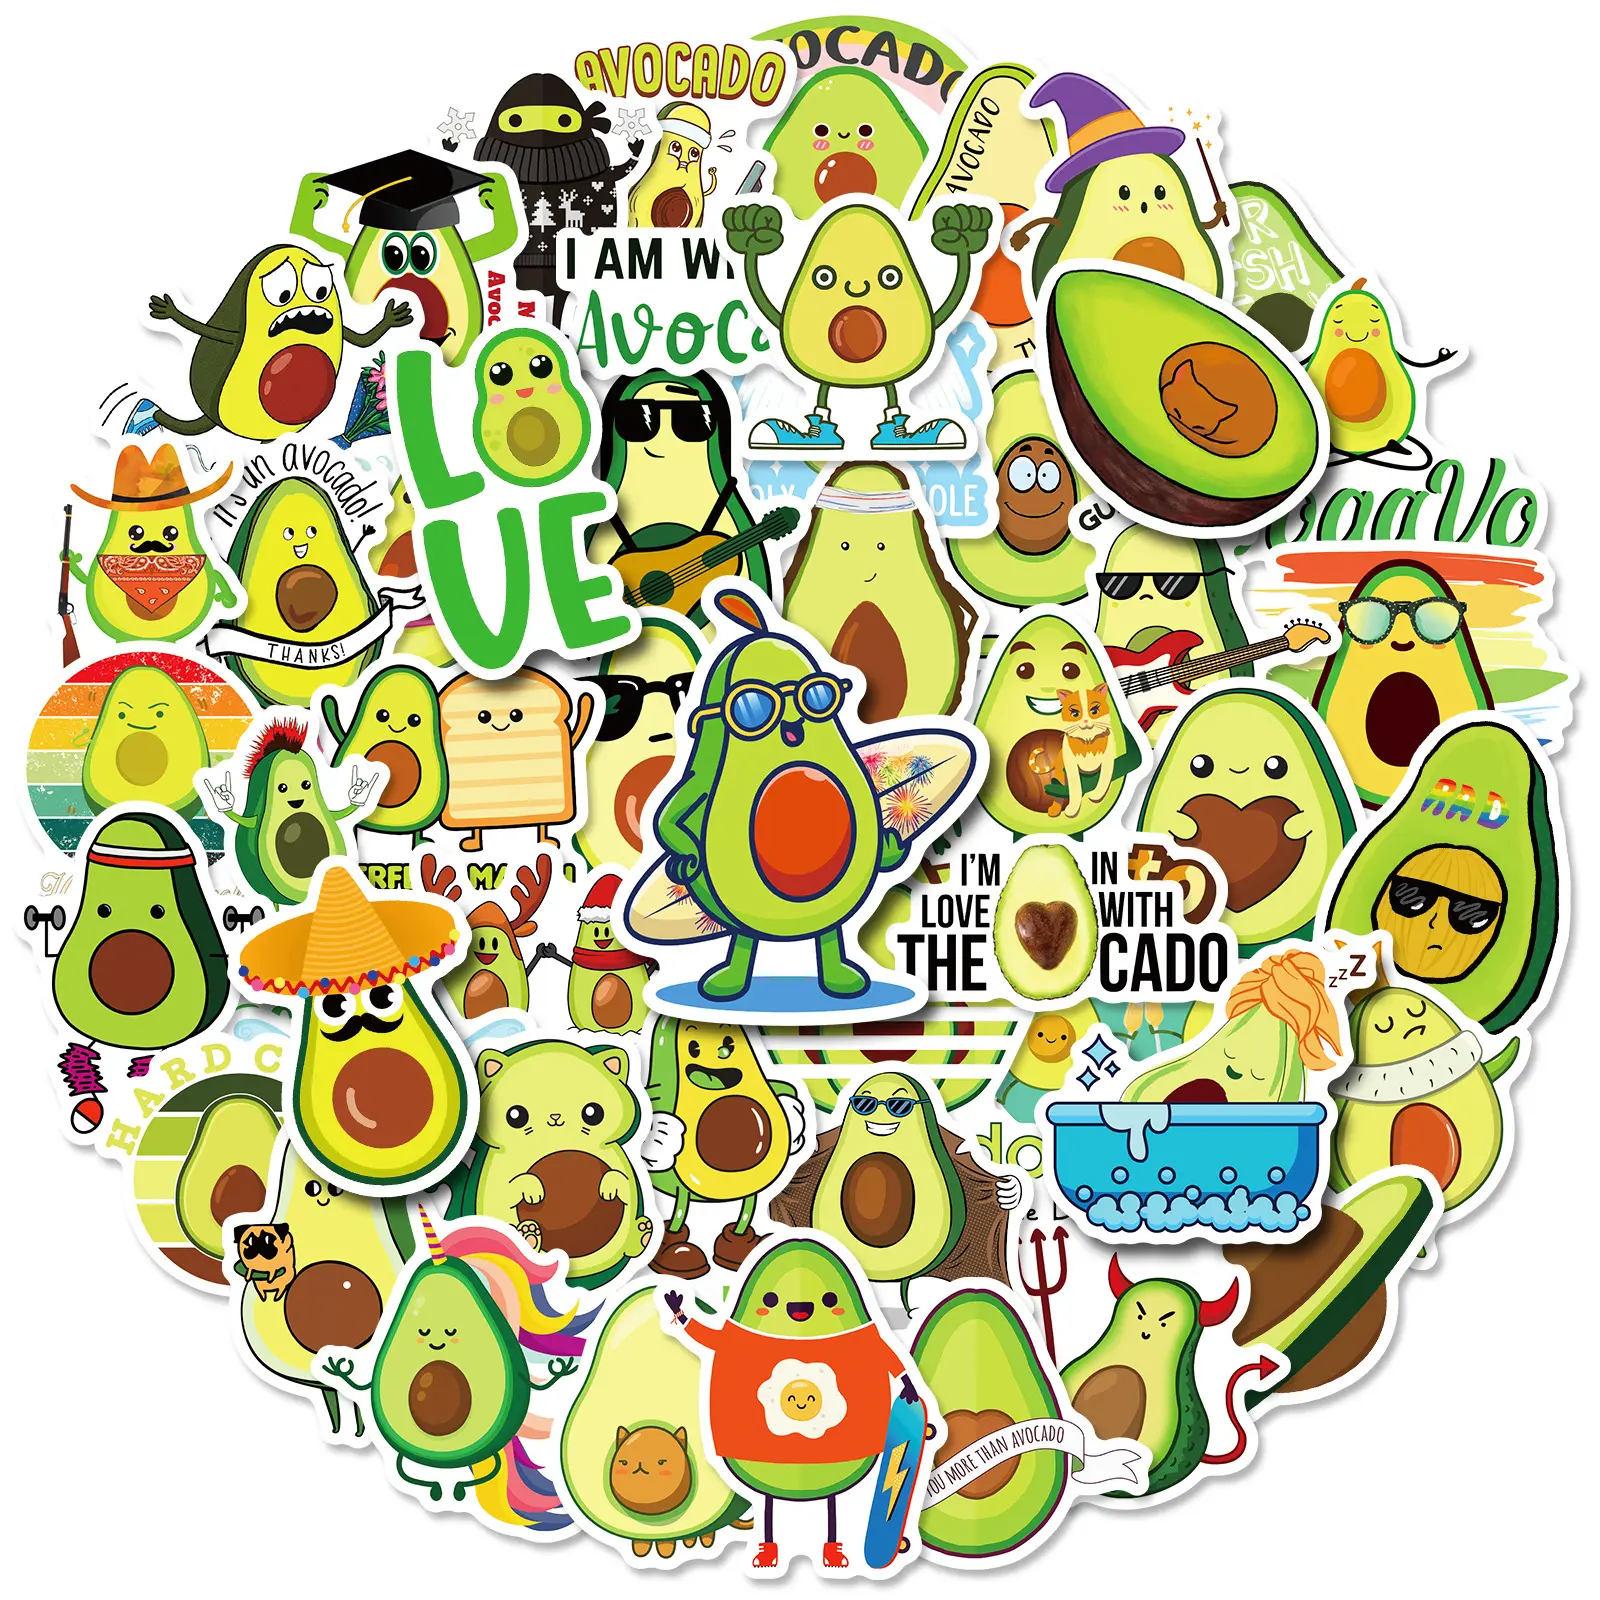 e-50pcs avocado graffiti stickers packs for Internet celebrity cartoon cute fruit creative car vinyl custom